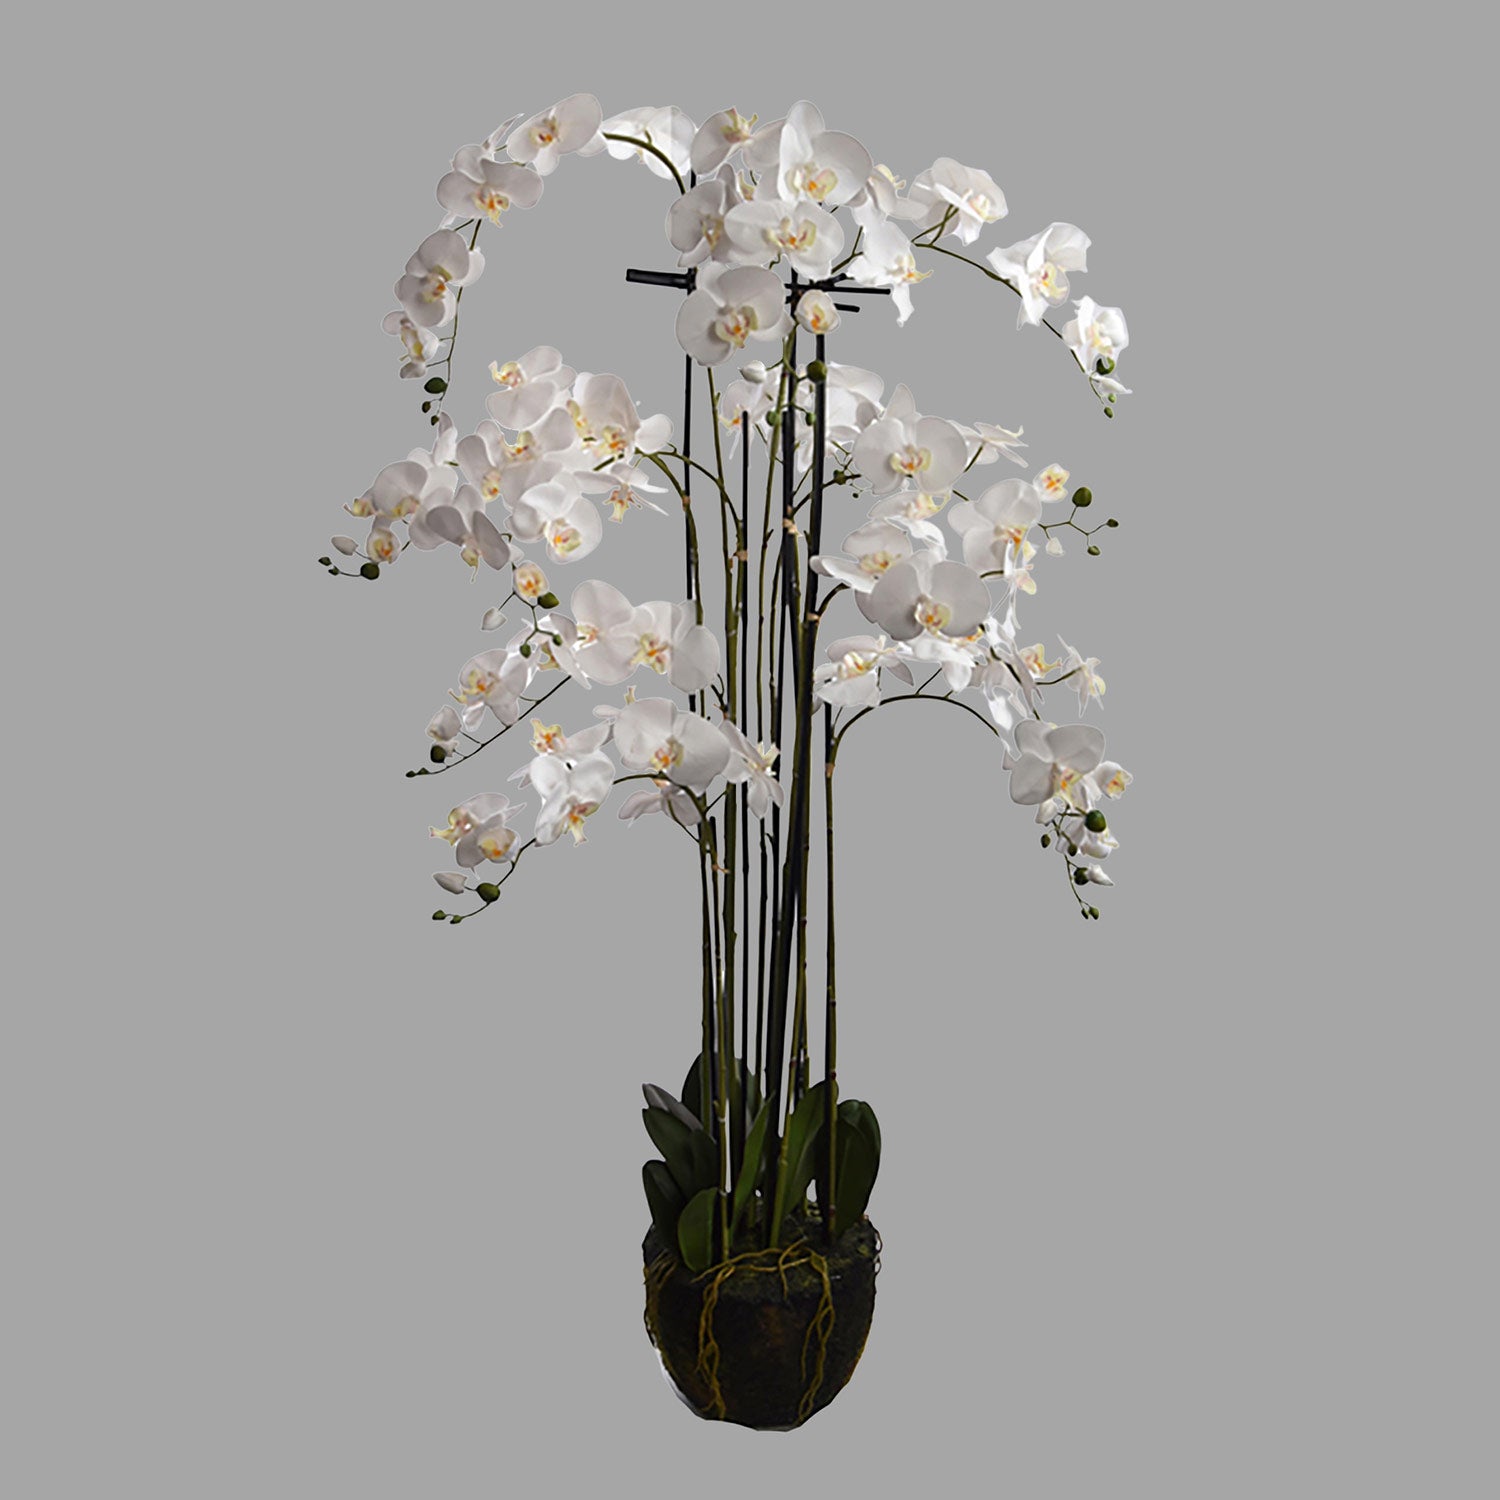 Krém színű mű orchidea, mesterséges földlabdában.